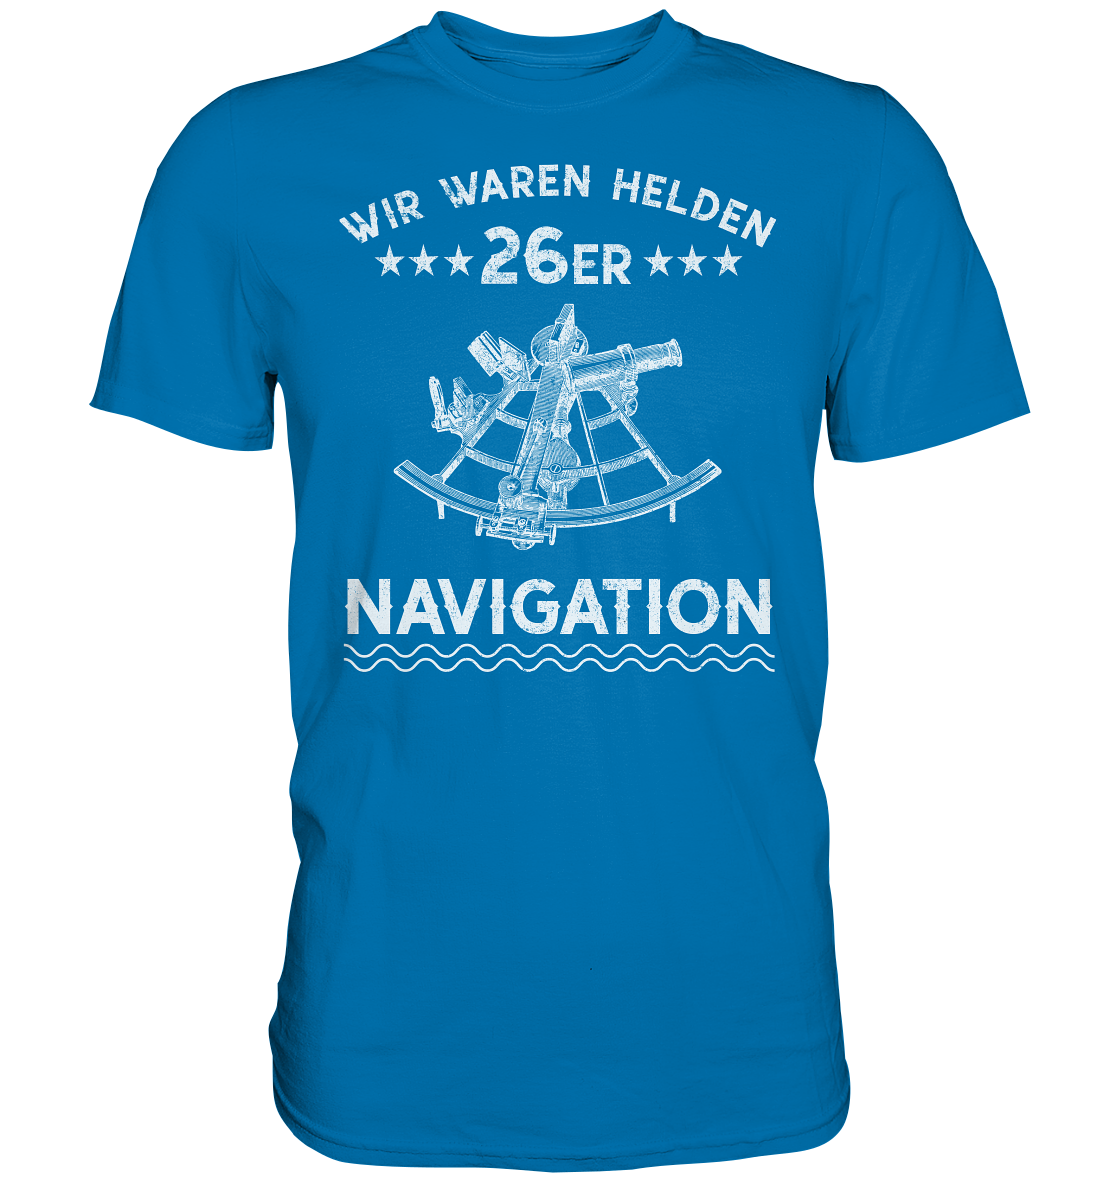 NAVIGATION - Wir waren Helden - Premium Shirt